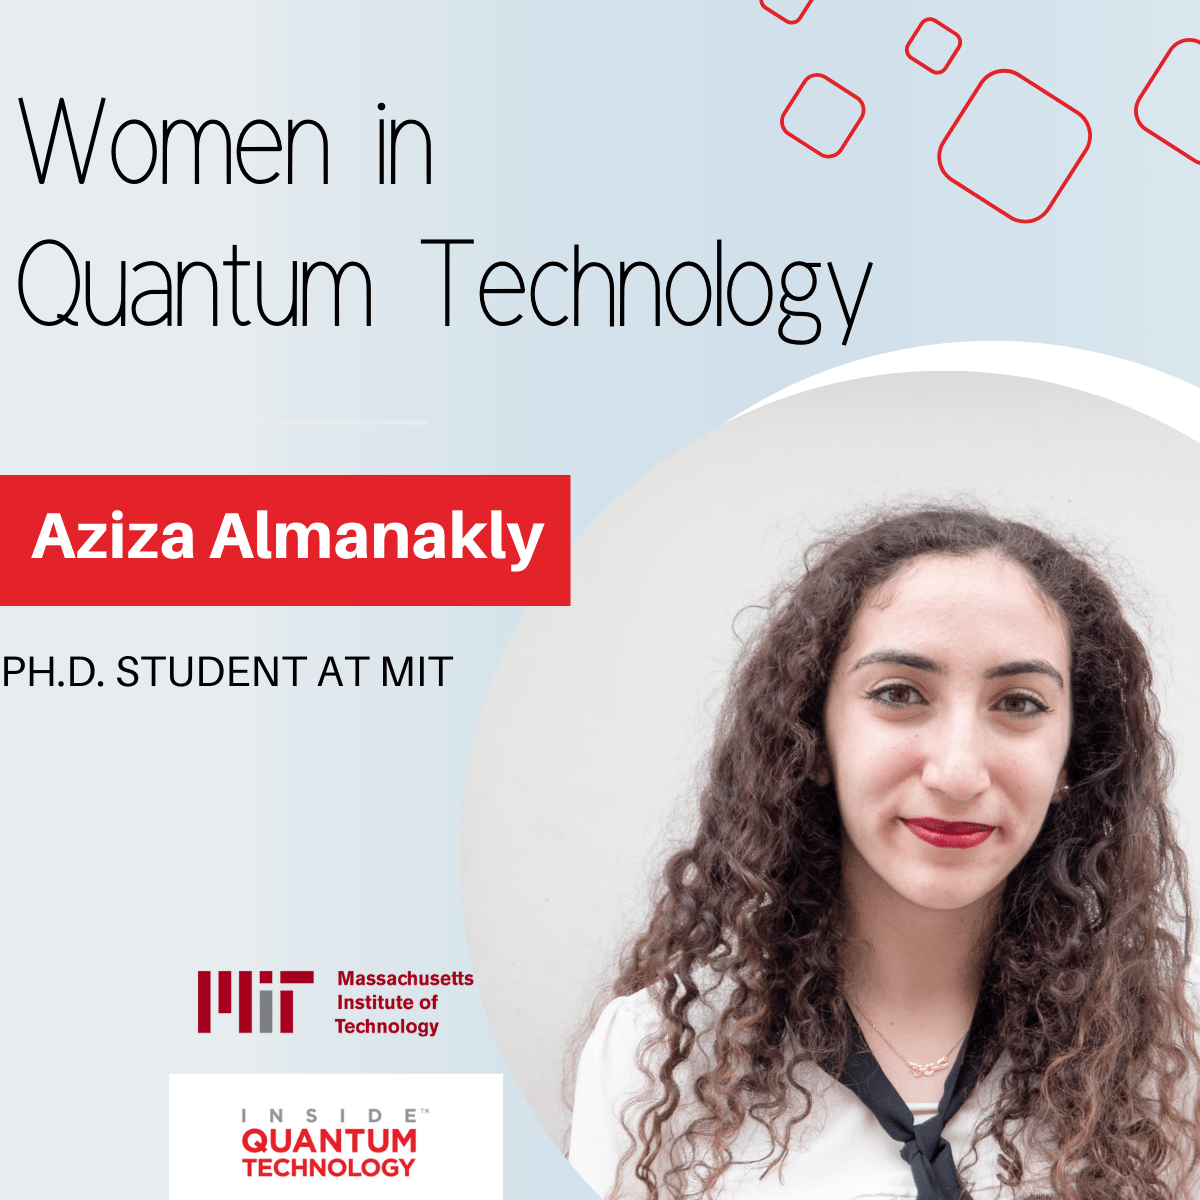 Aziza Almanakly, một sinh viên tốt nghiệp tại MIT, thảo luận về quá trình học tập và nghiên cứu của cô về điện toán lượng tử và quang tử học.